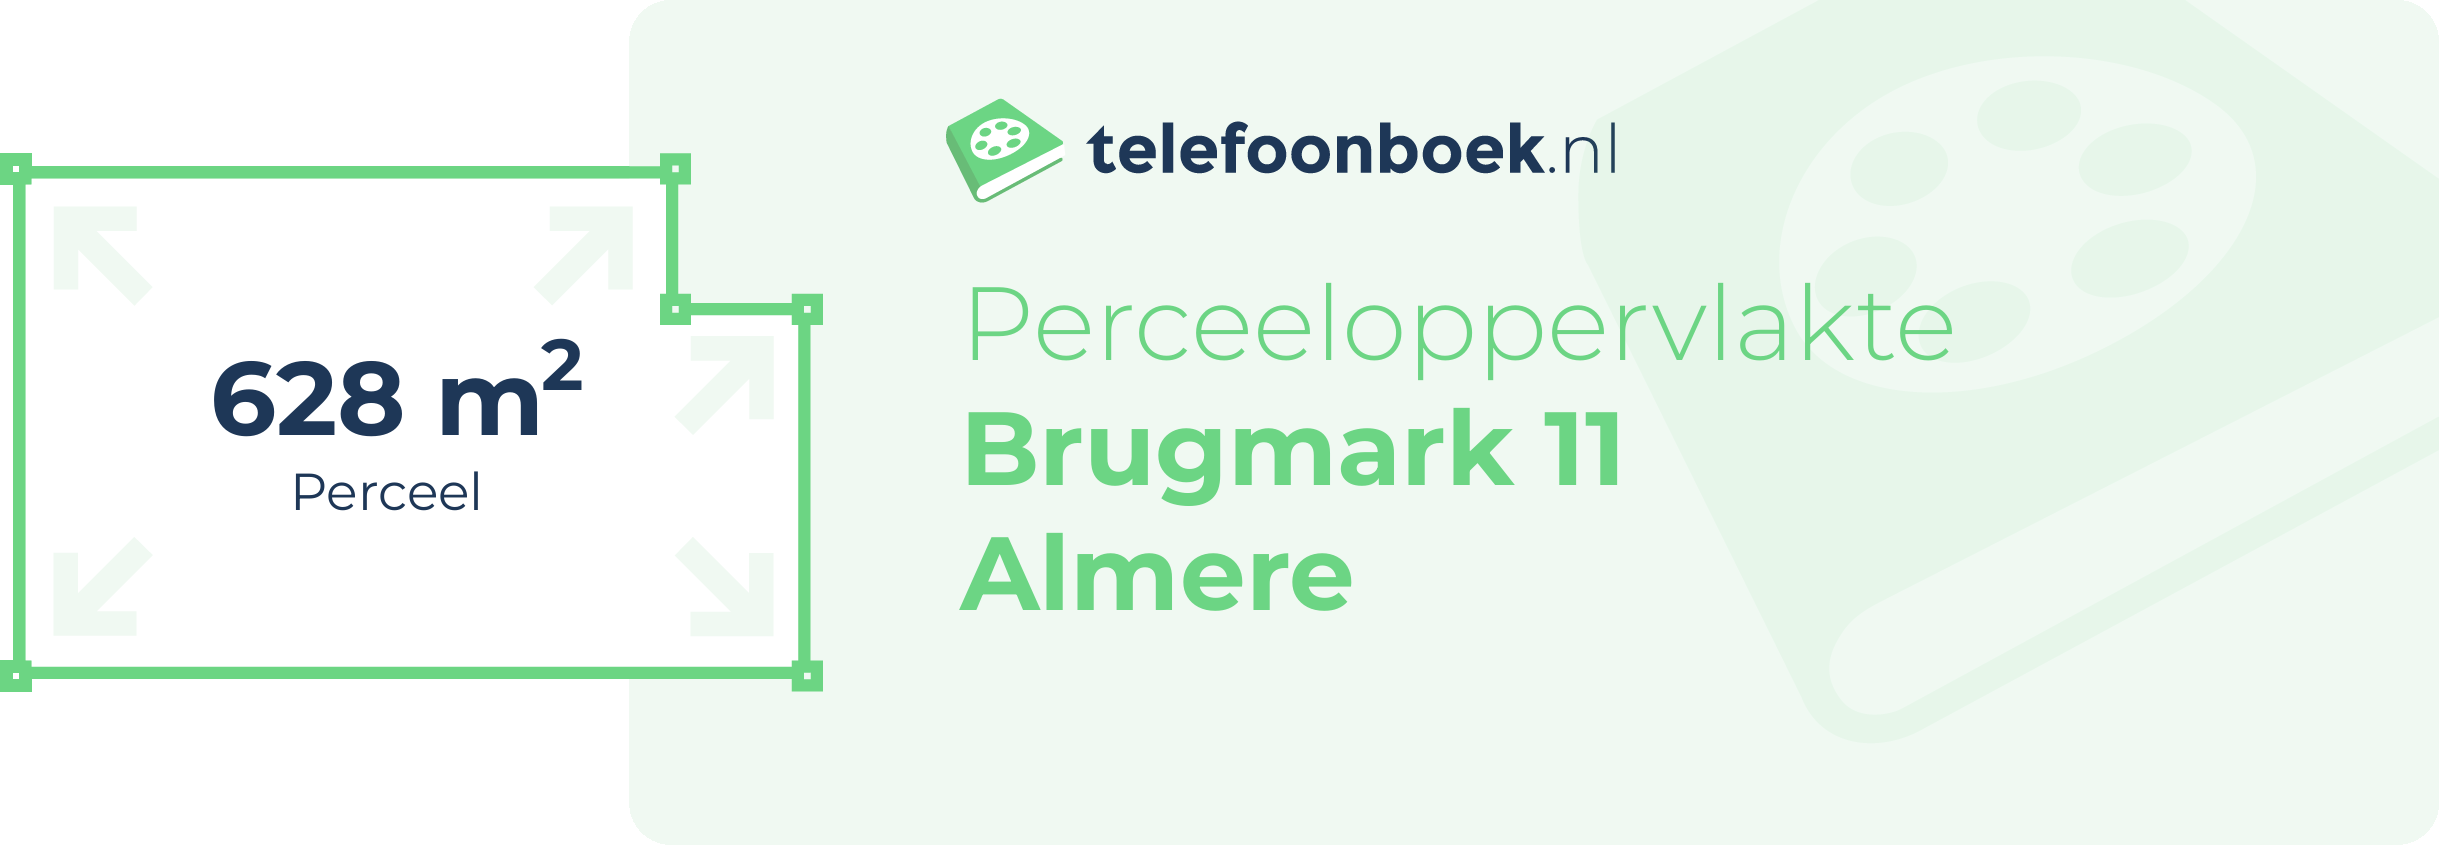 Perceeloppervlakte Brugmark 11 Almere